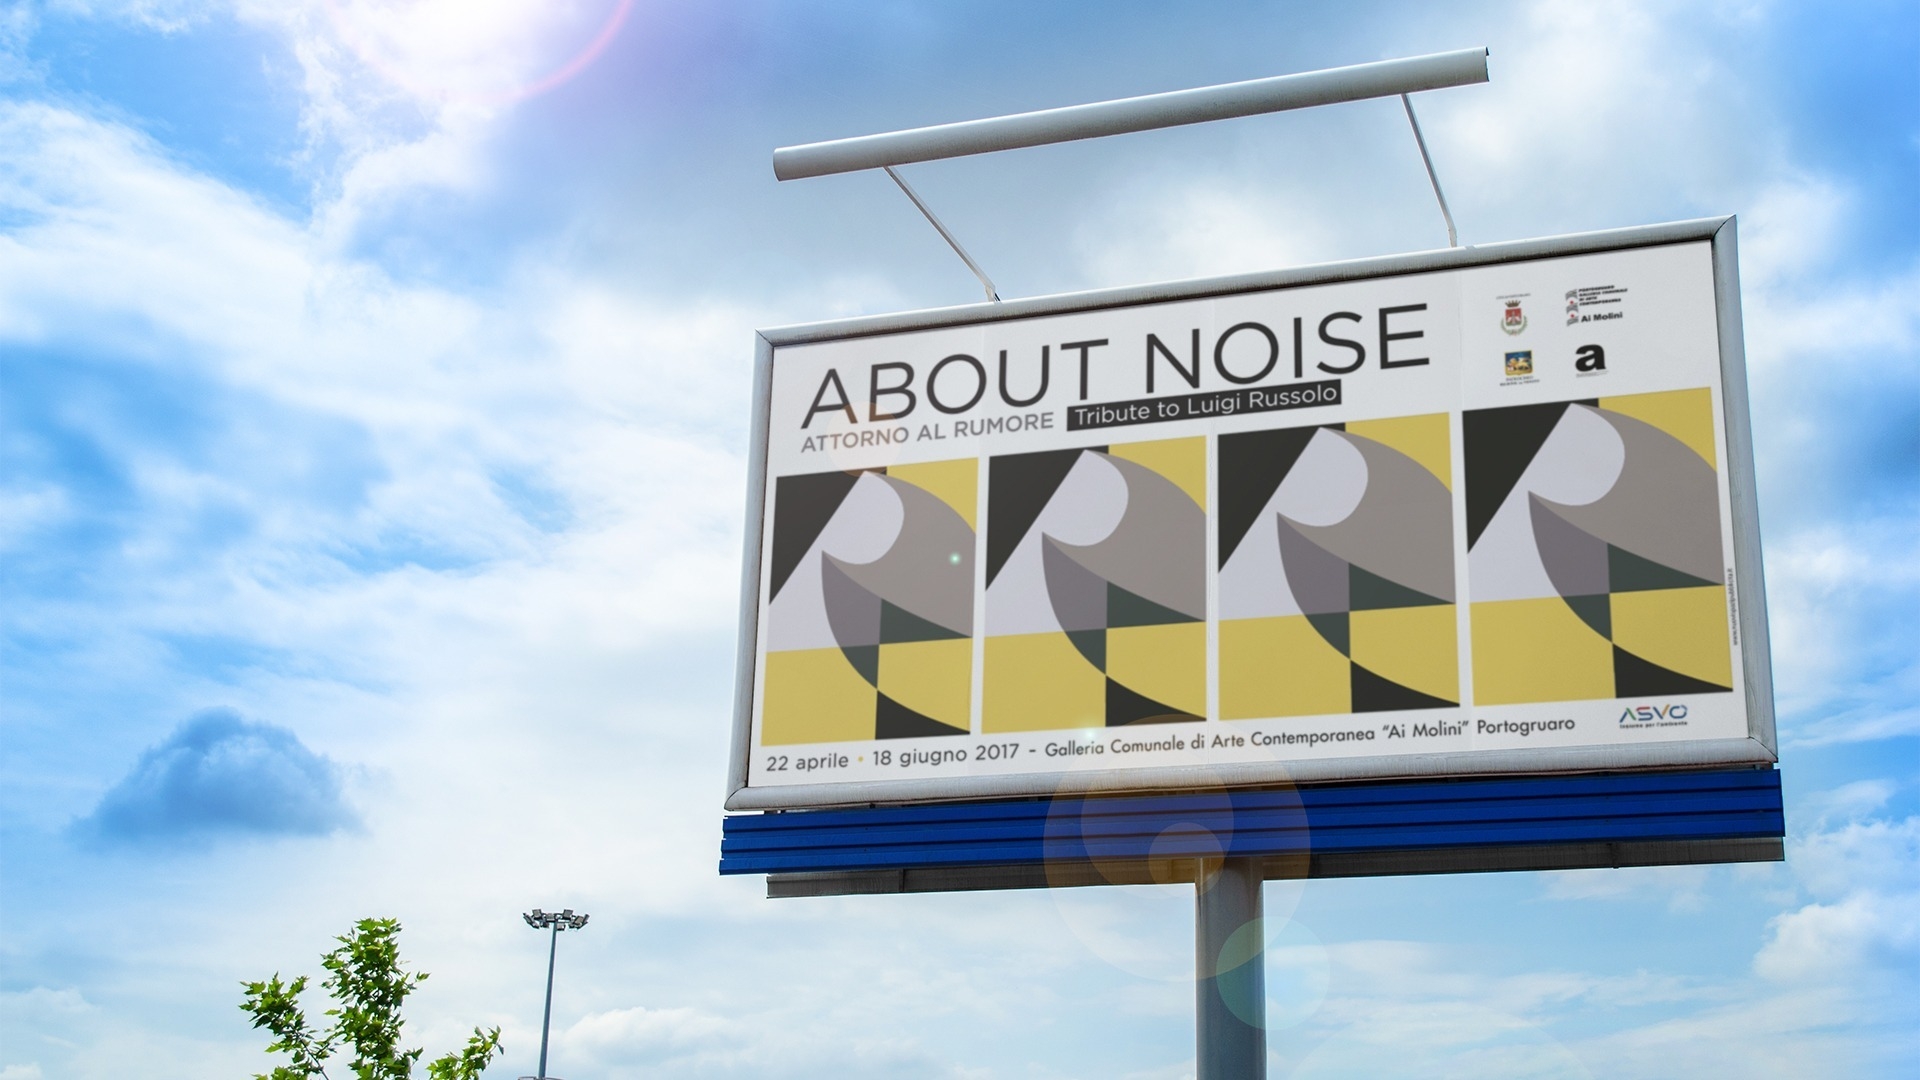 Caso studio About Noise - un omaggio al futurista Luigi Russolo